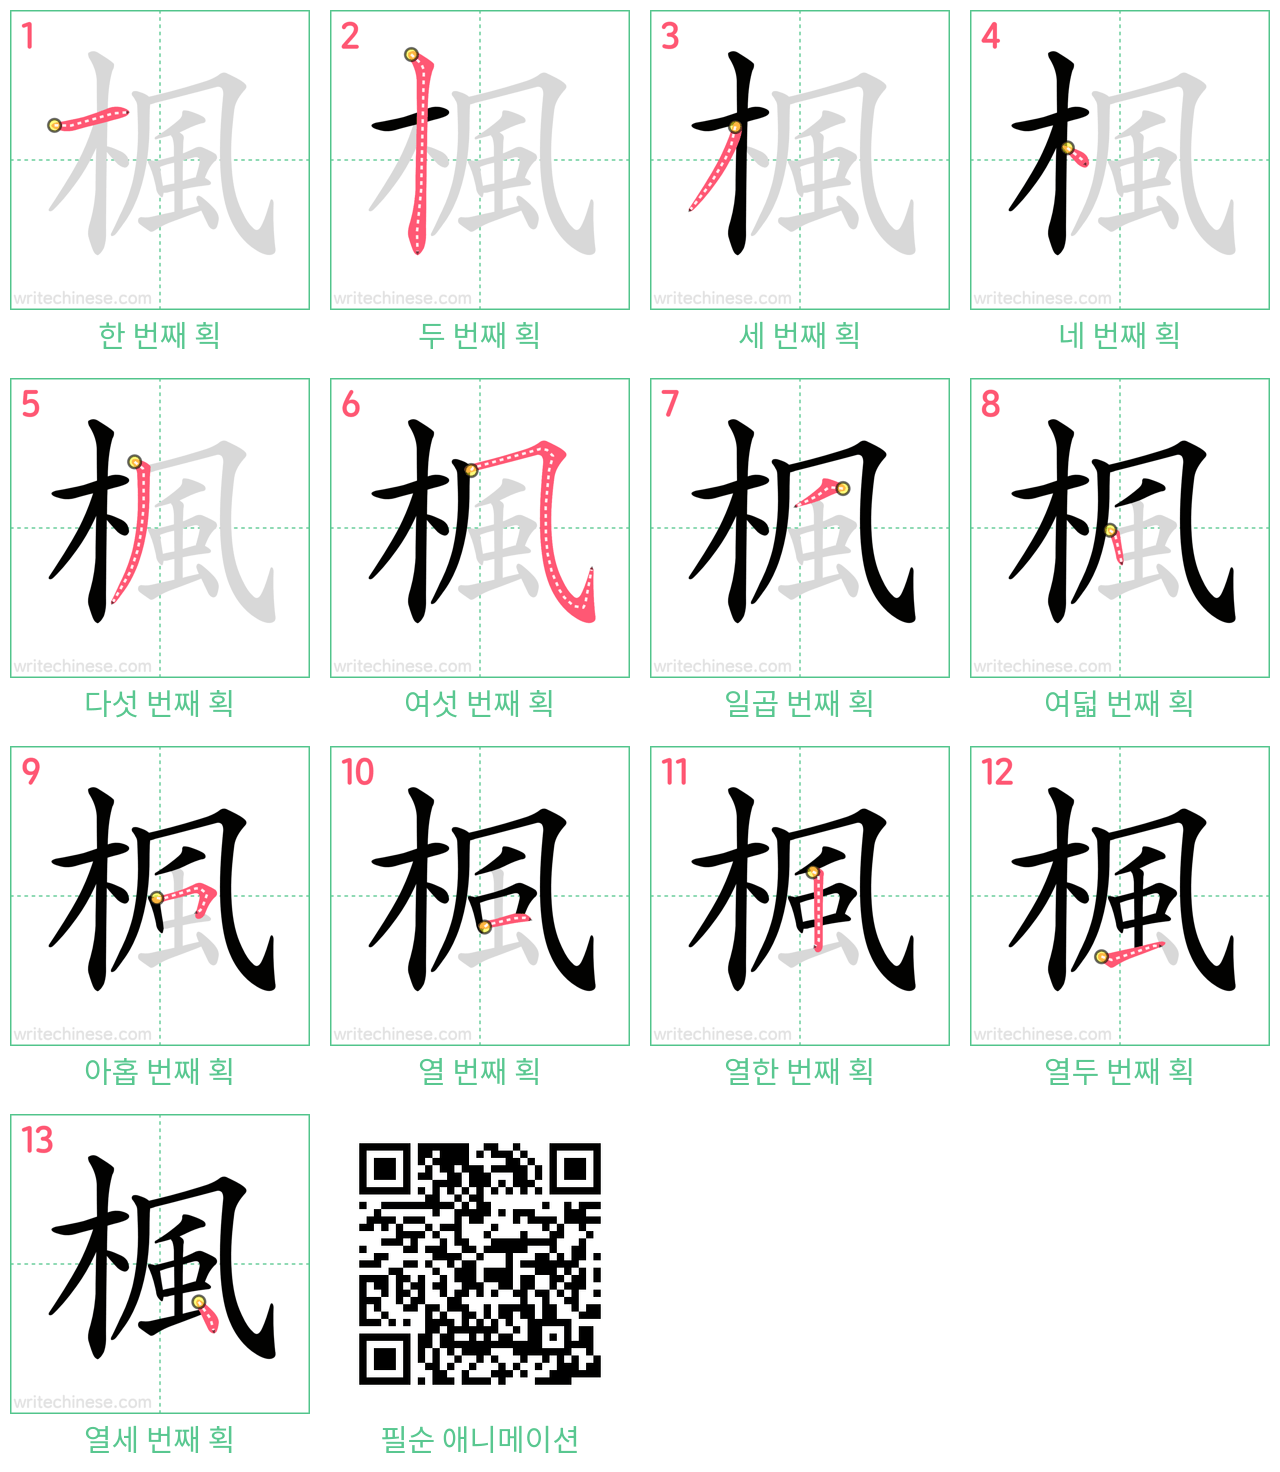 楓 step-by-step stroke order diagrams